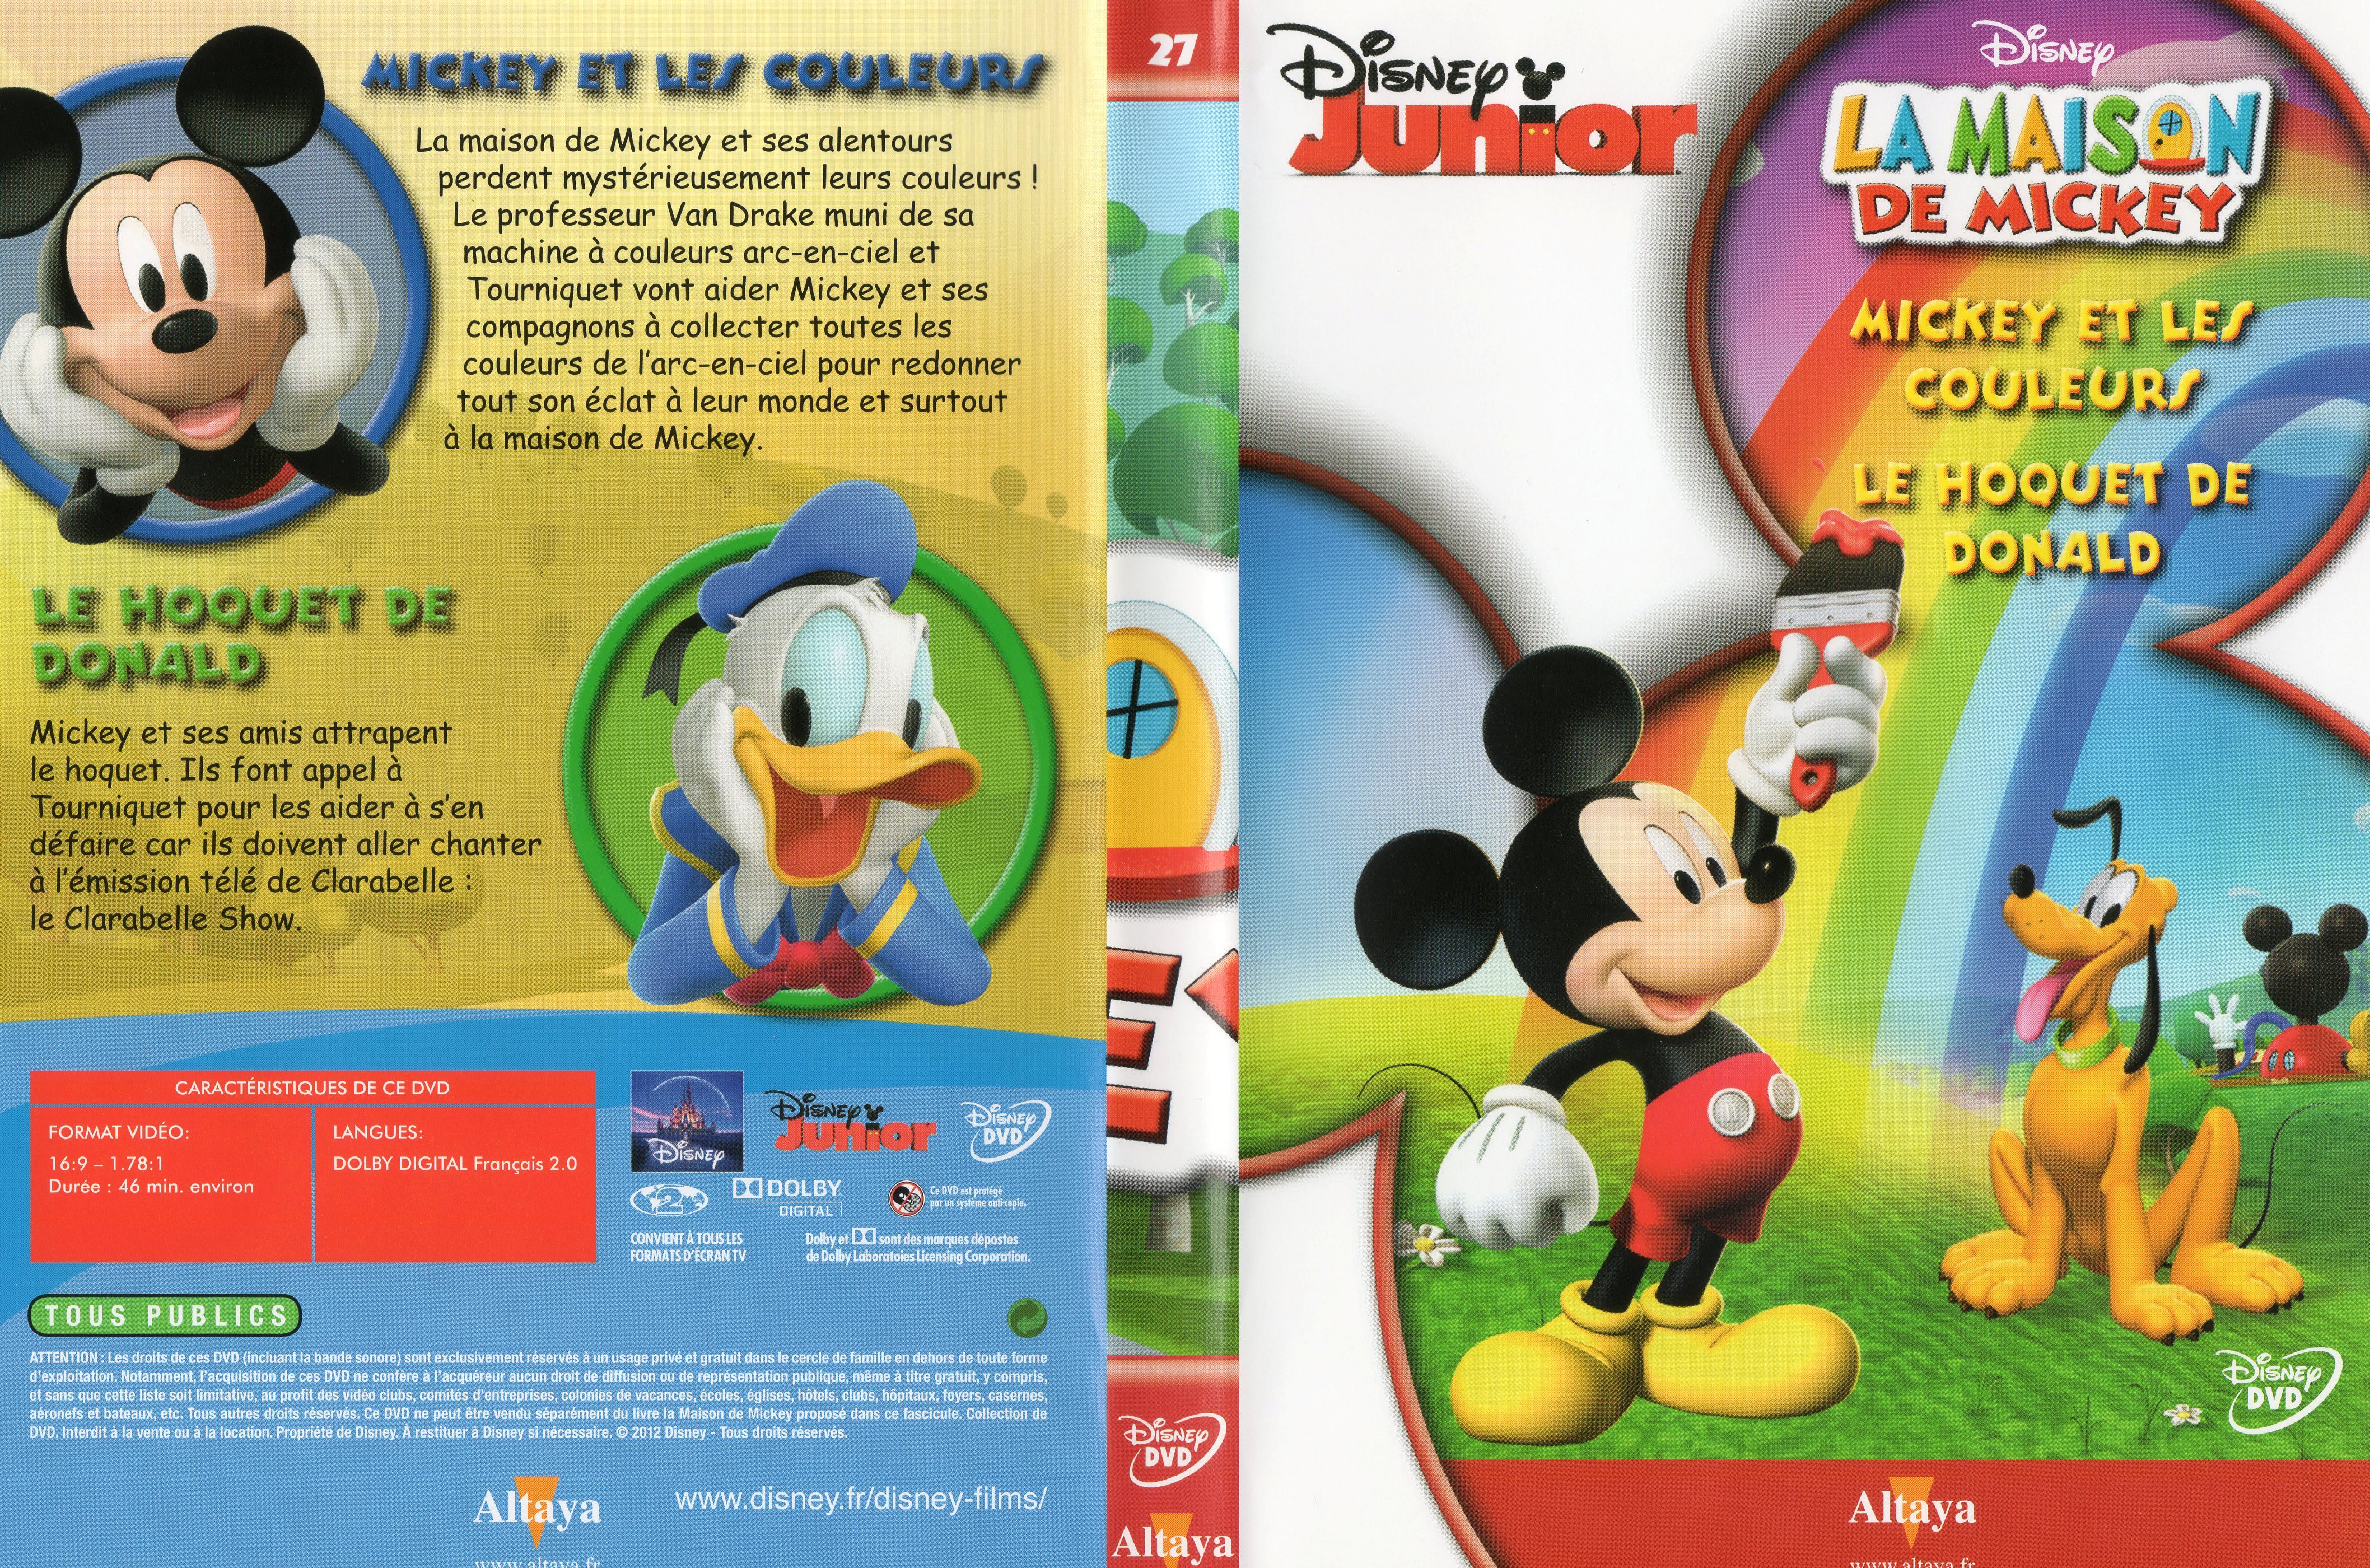 Jaquette DVD La maison de Mickey DVD 27